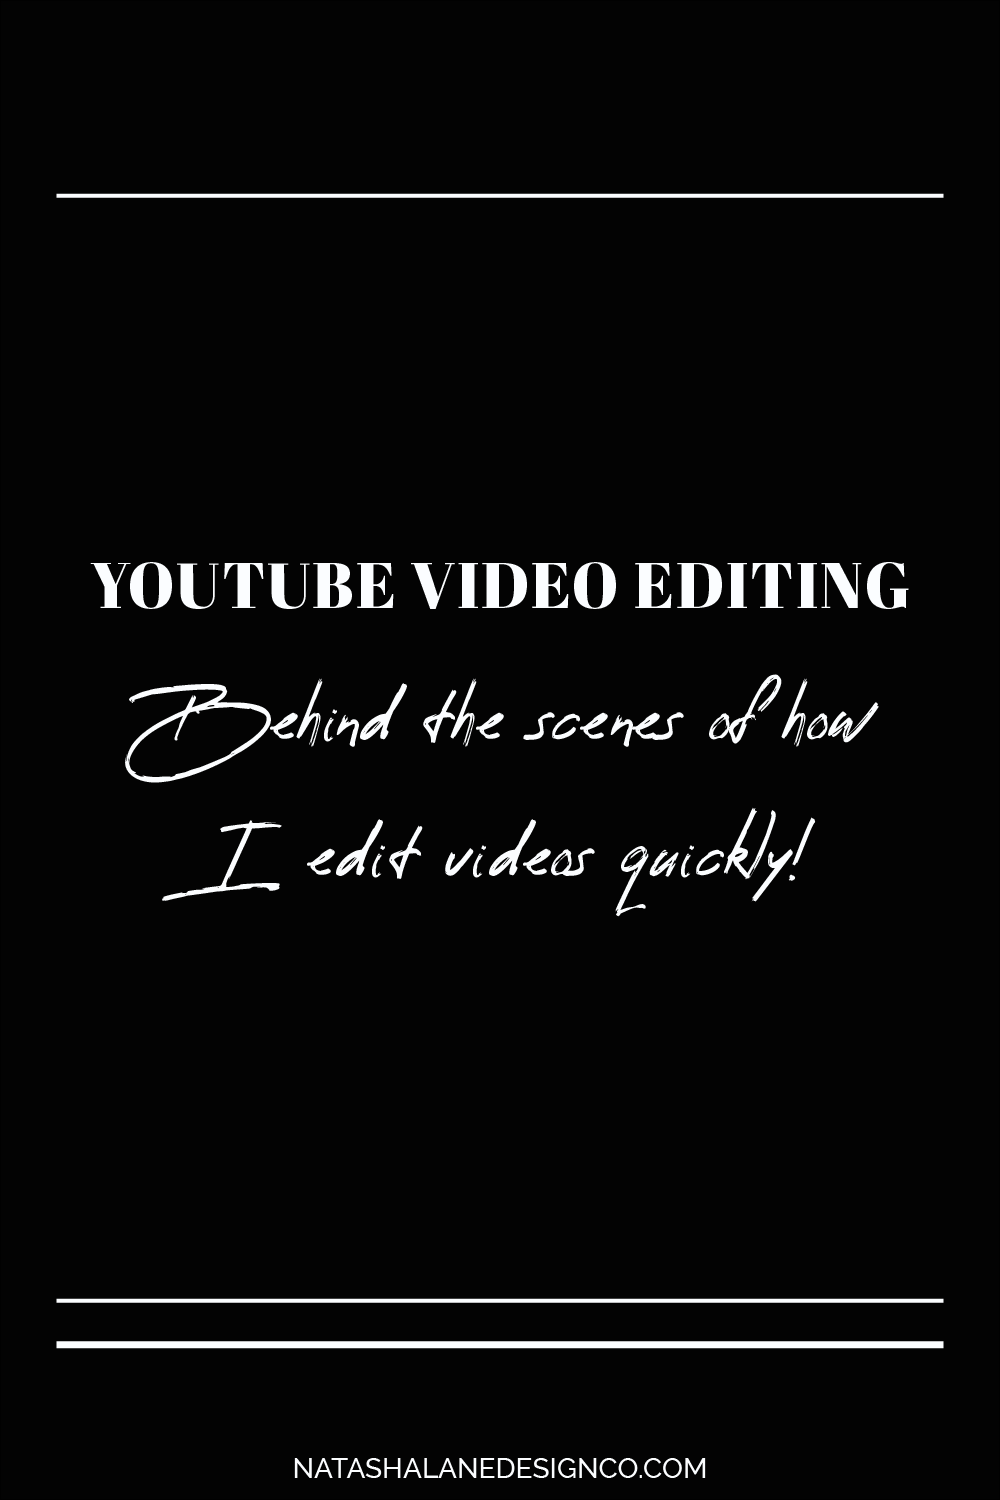 How I edit videos